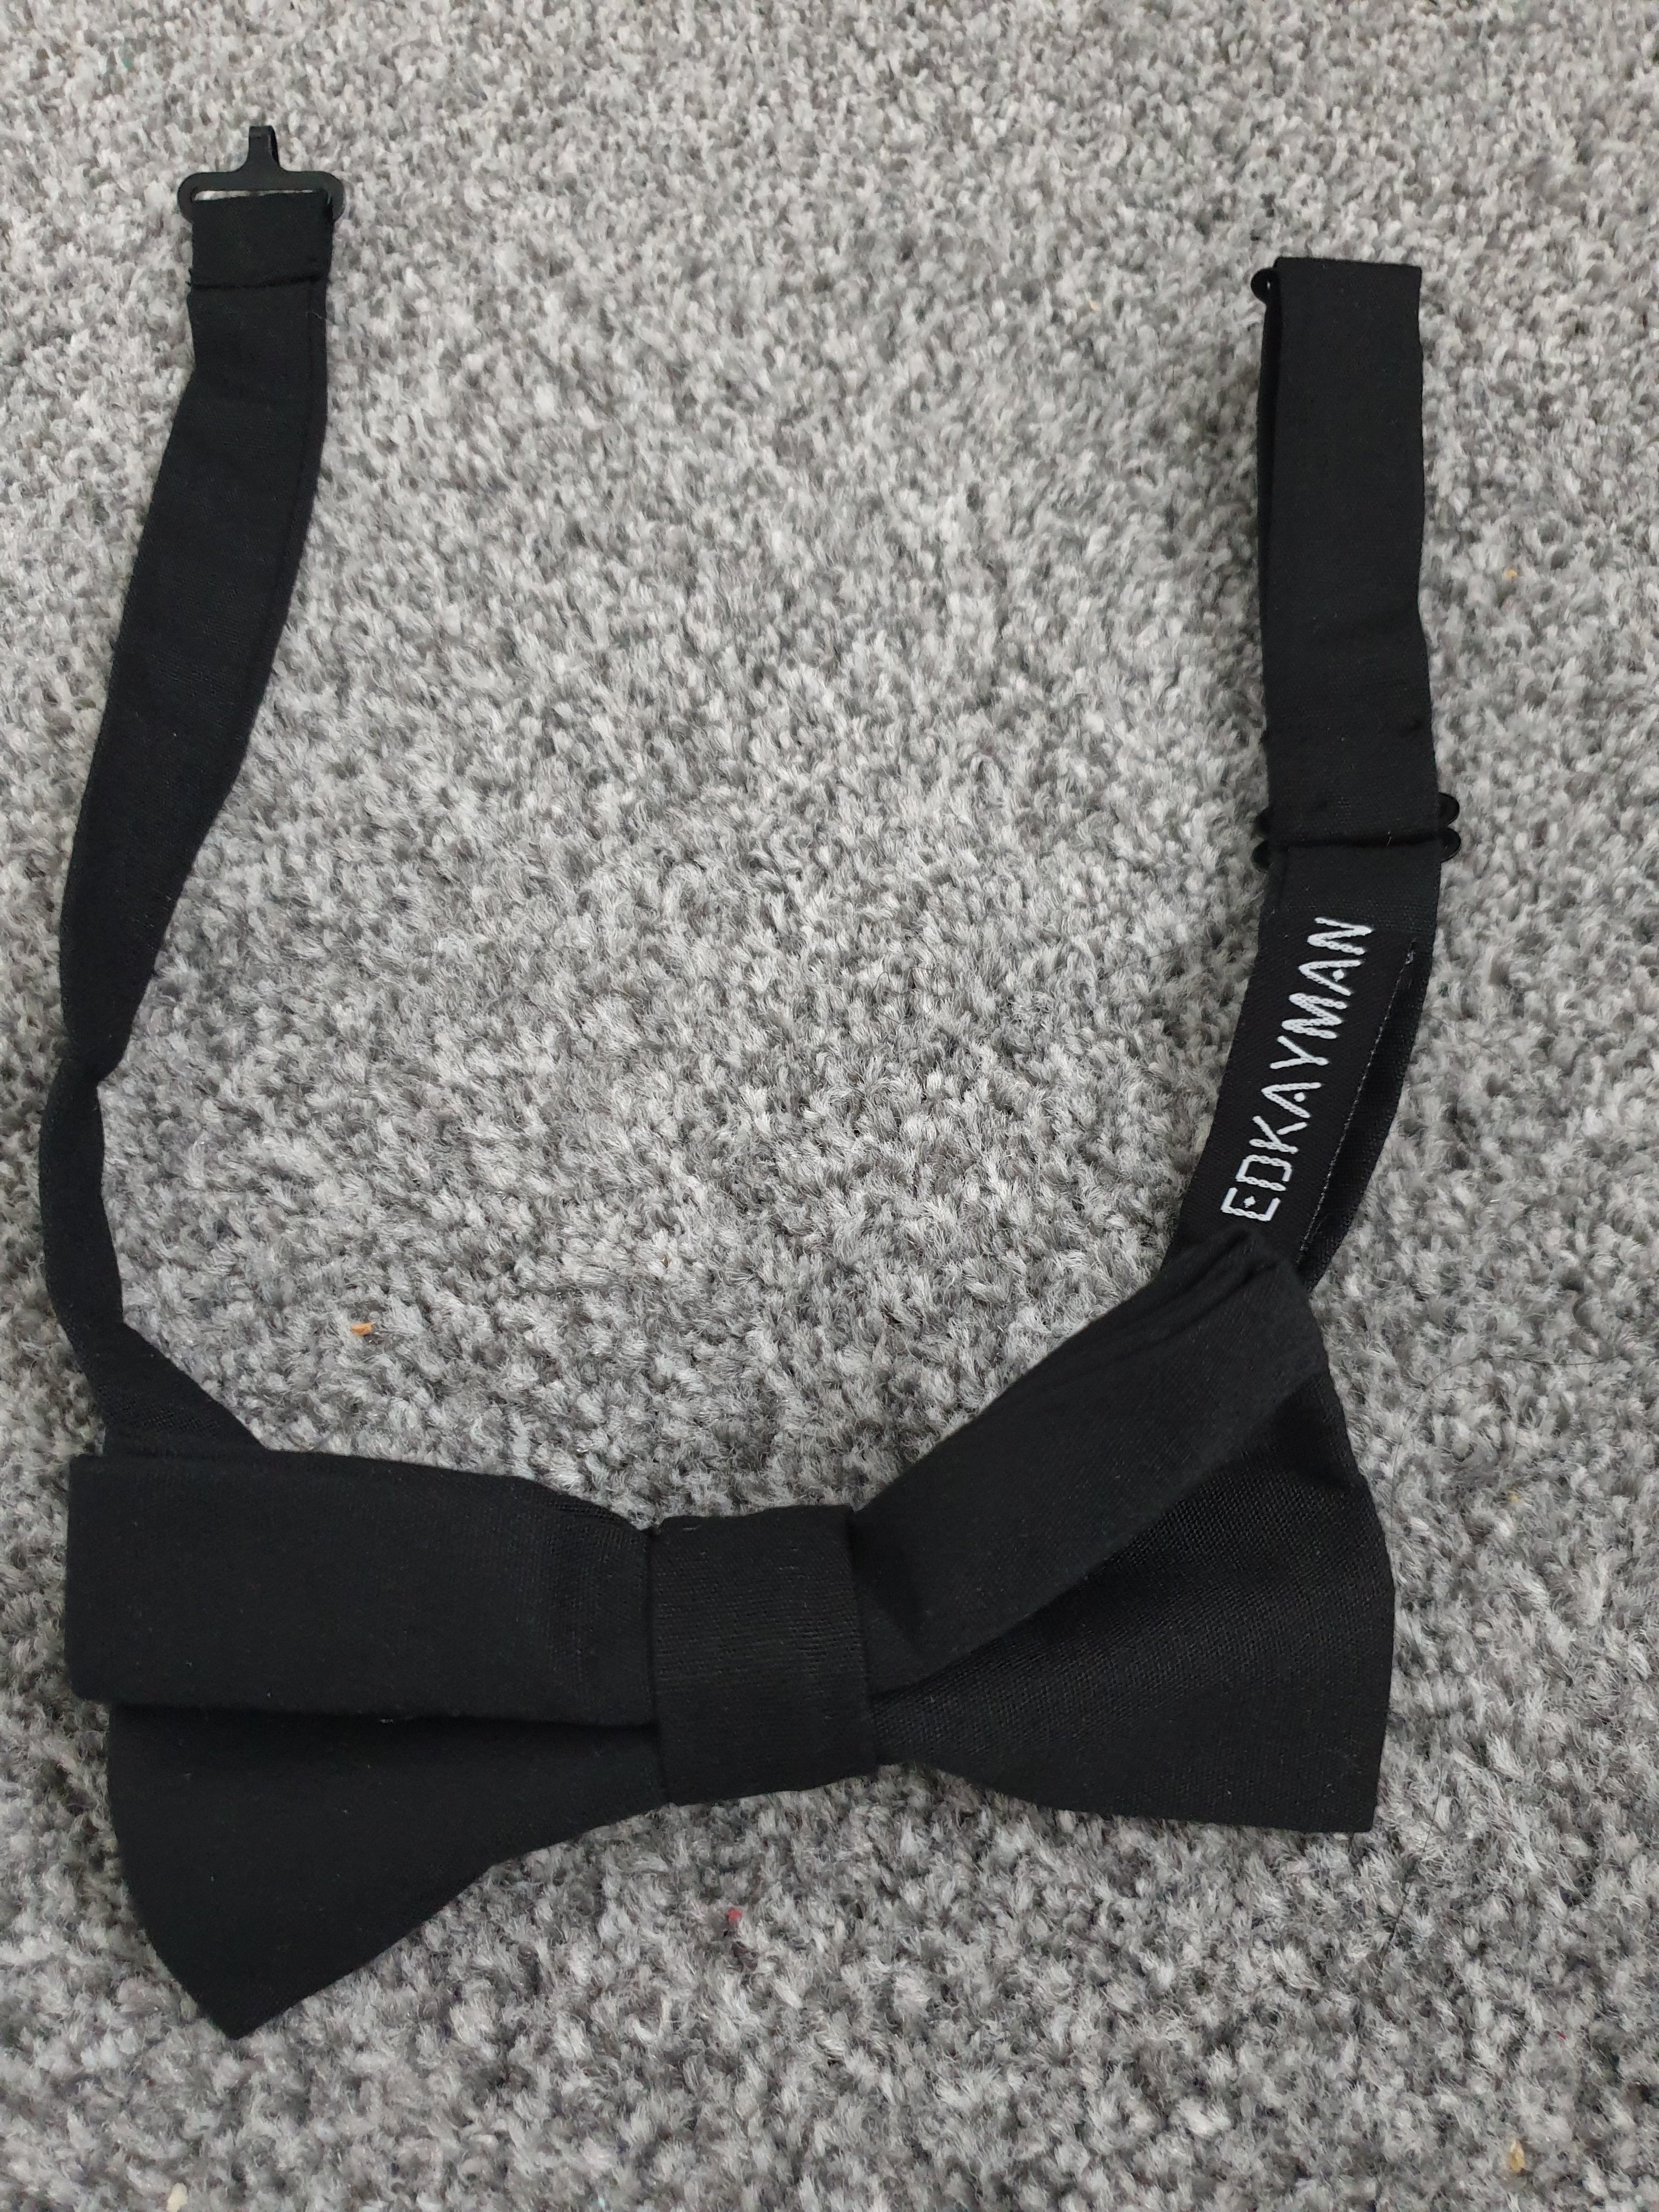 Black pre-tied cotton bow tie